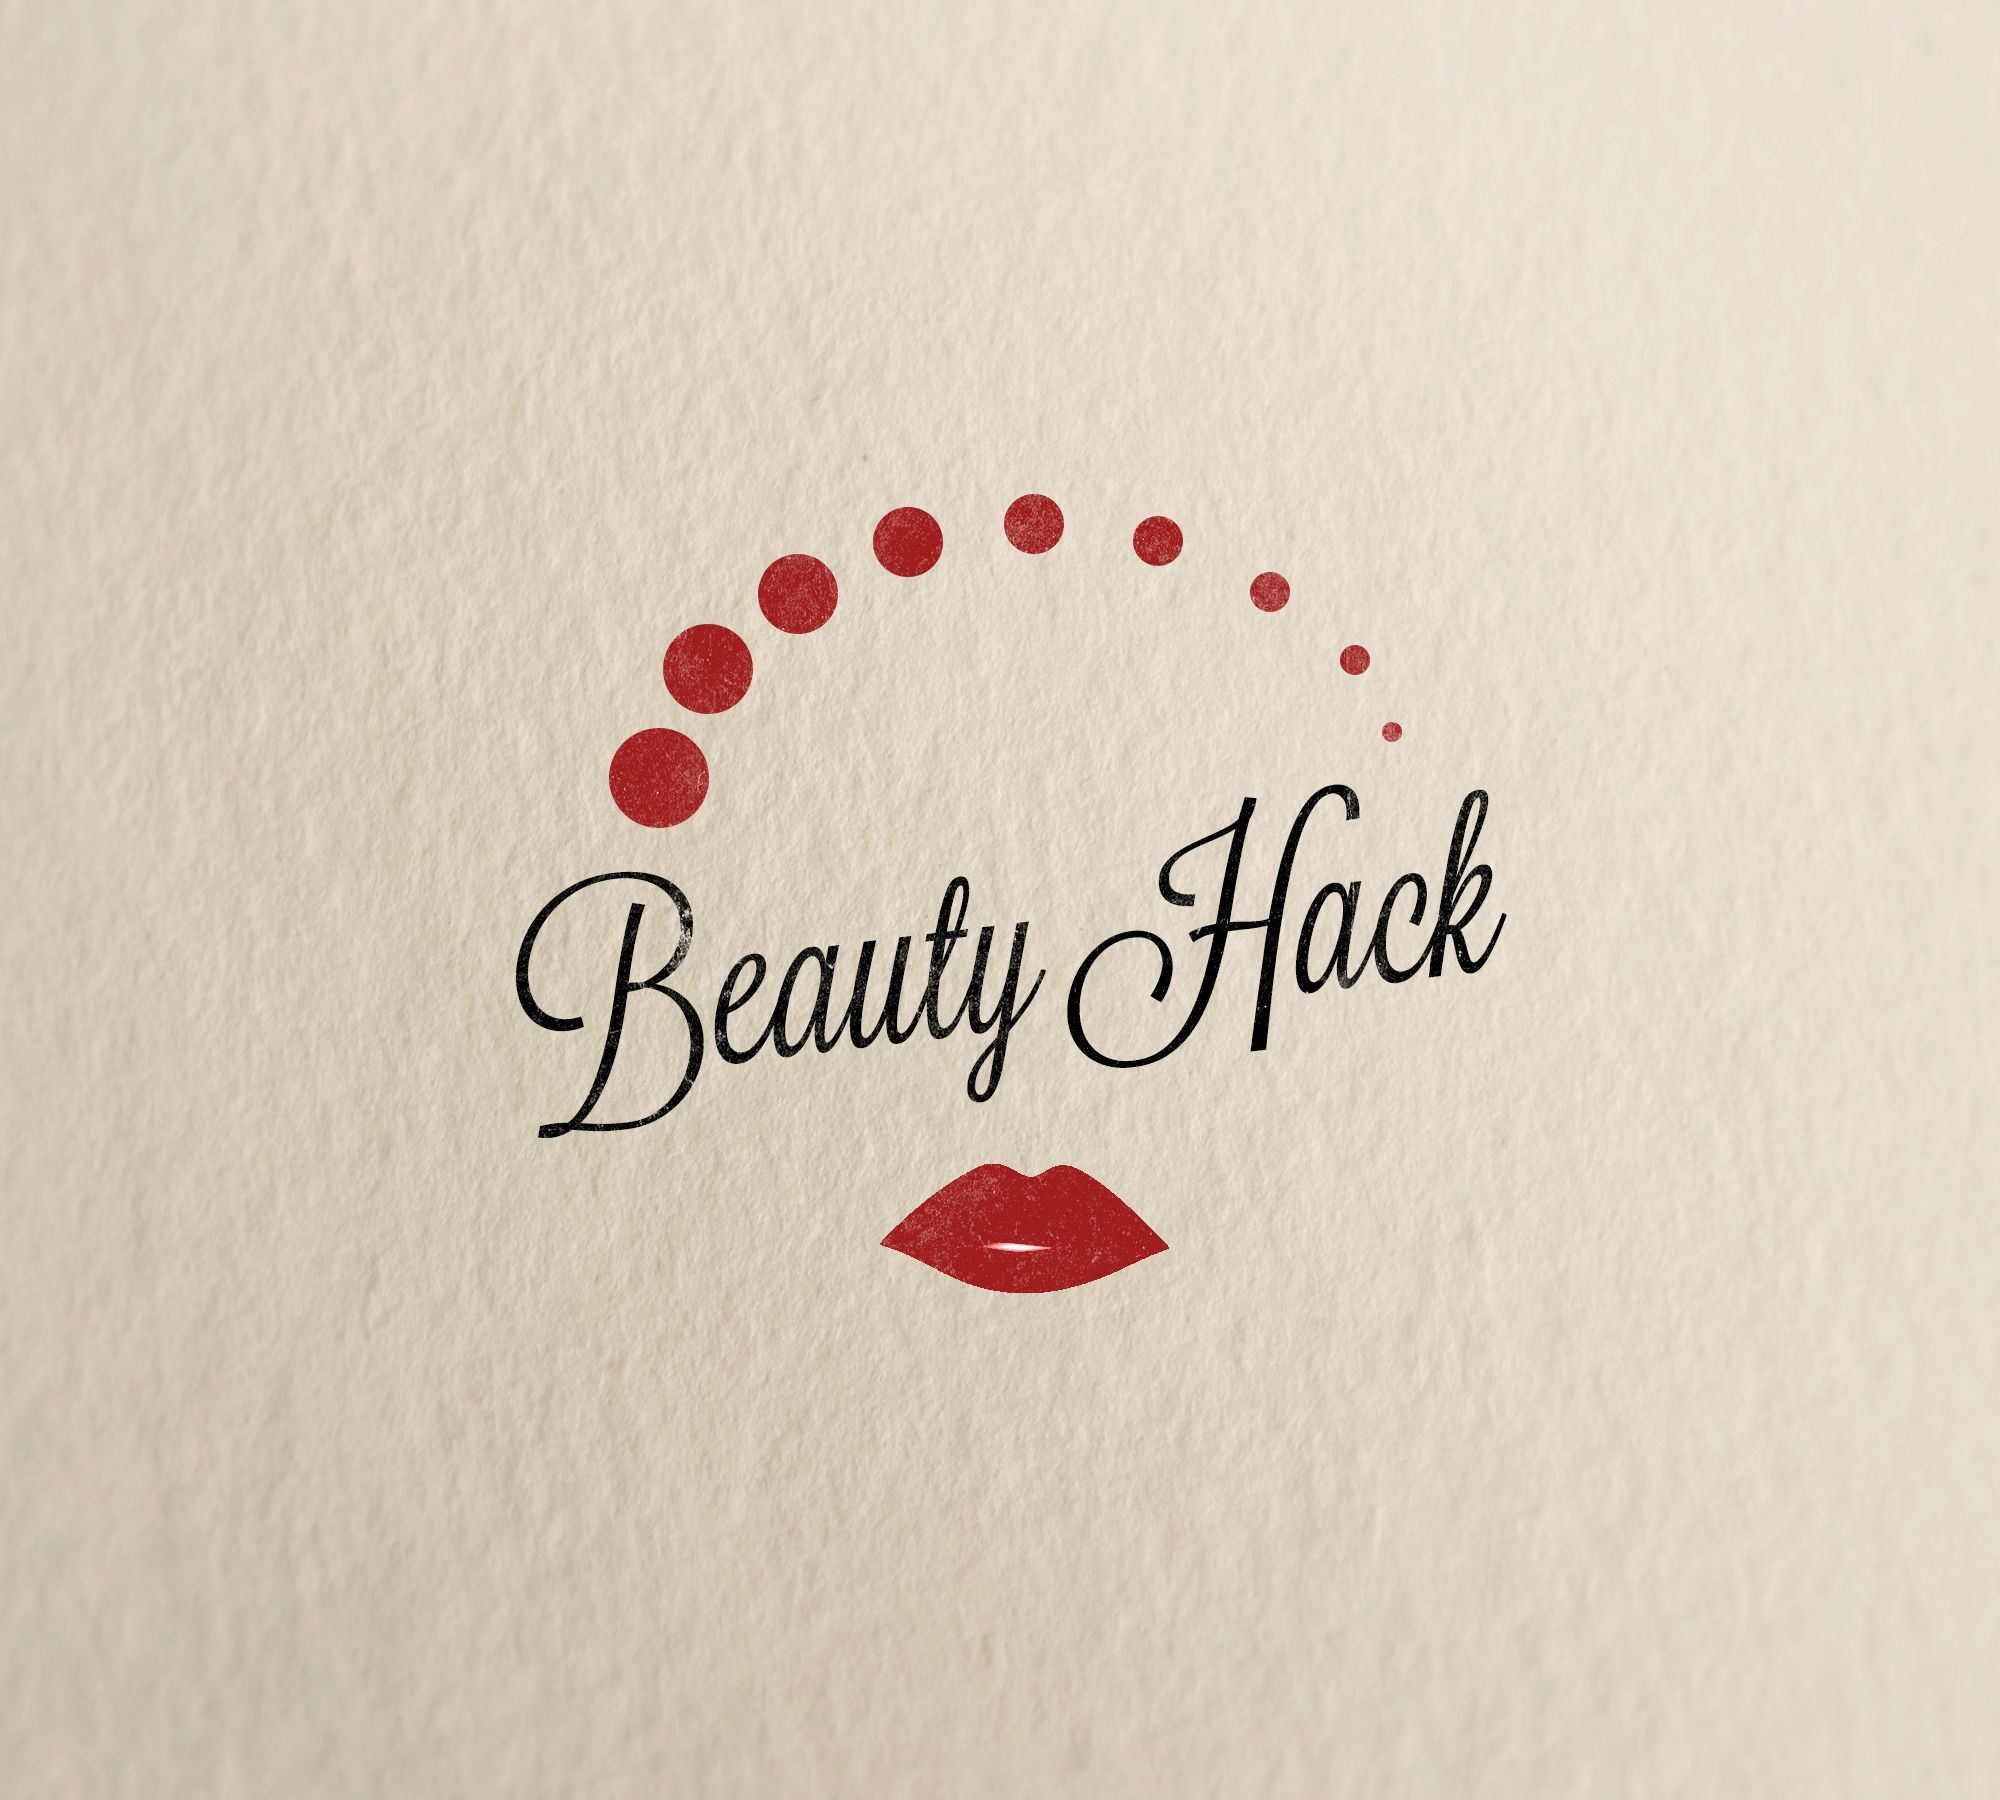 Логотип для сайта о красоте и здоровье - дизайнер dda_divinity